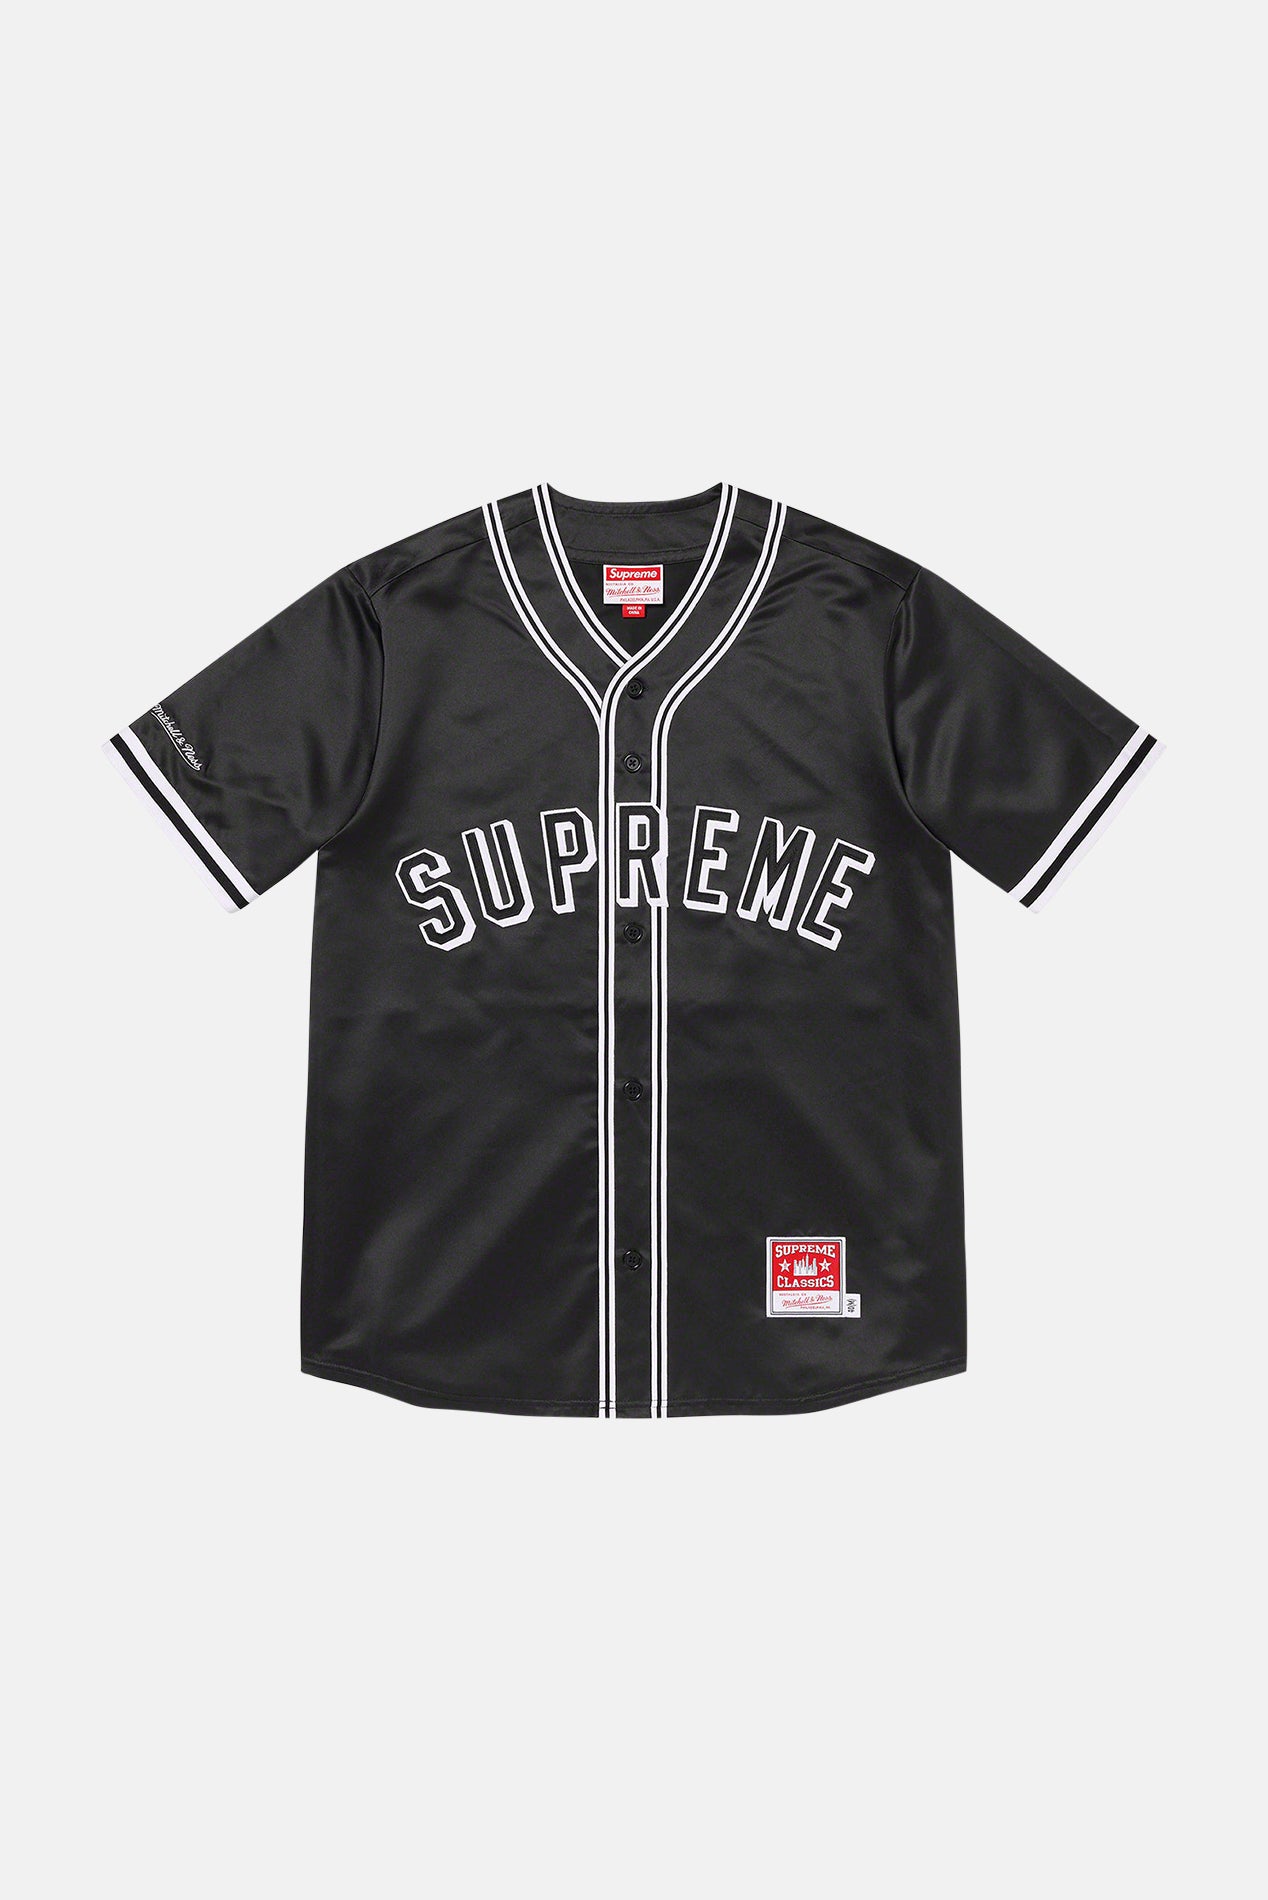 Supreme Baseball Jersey